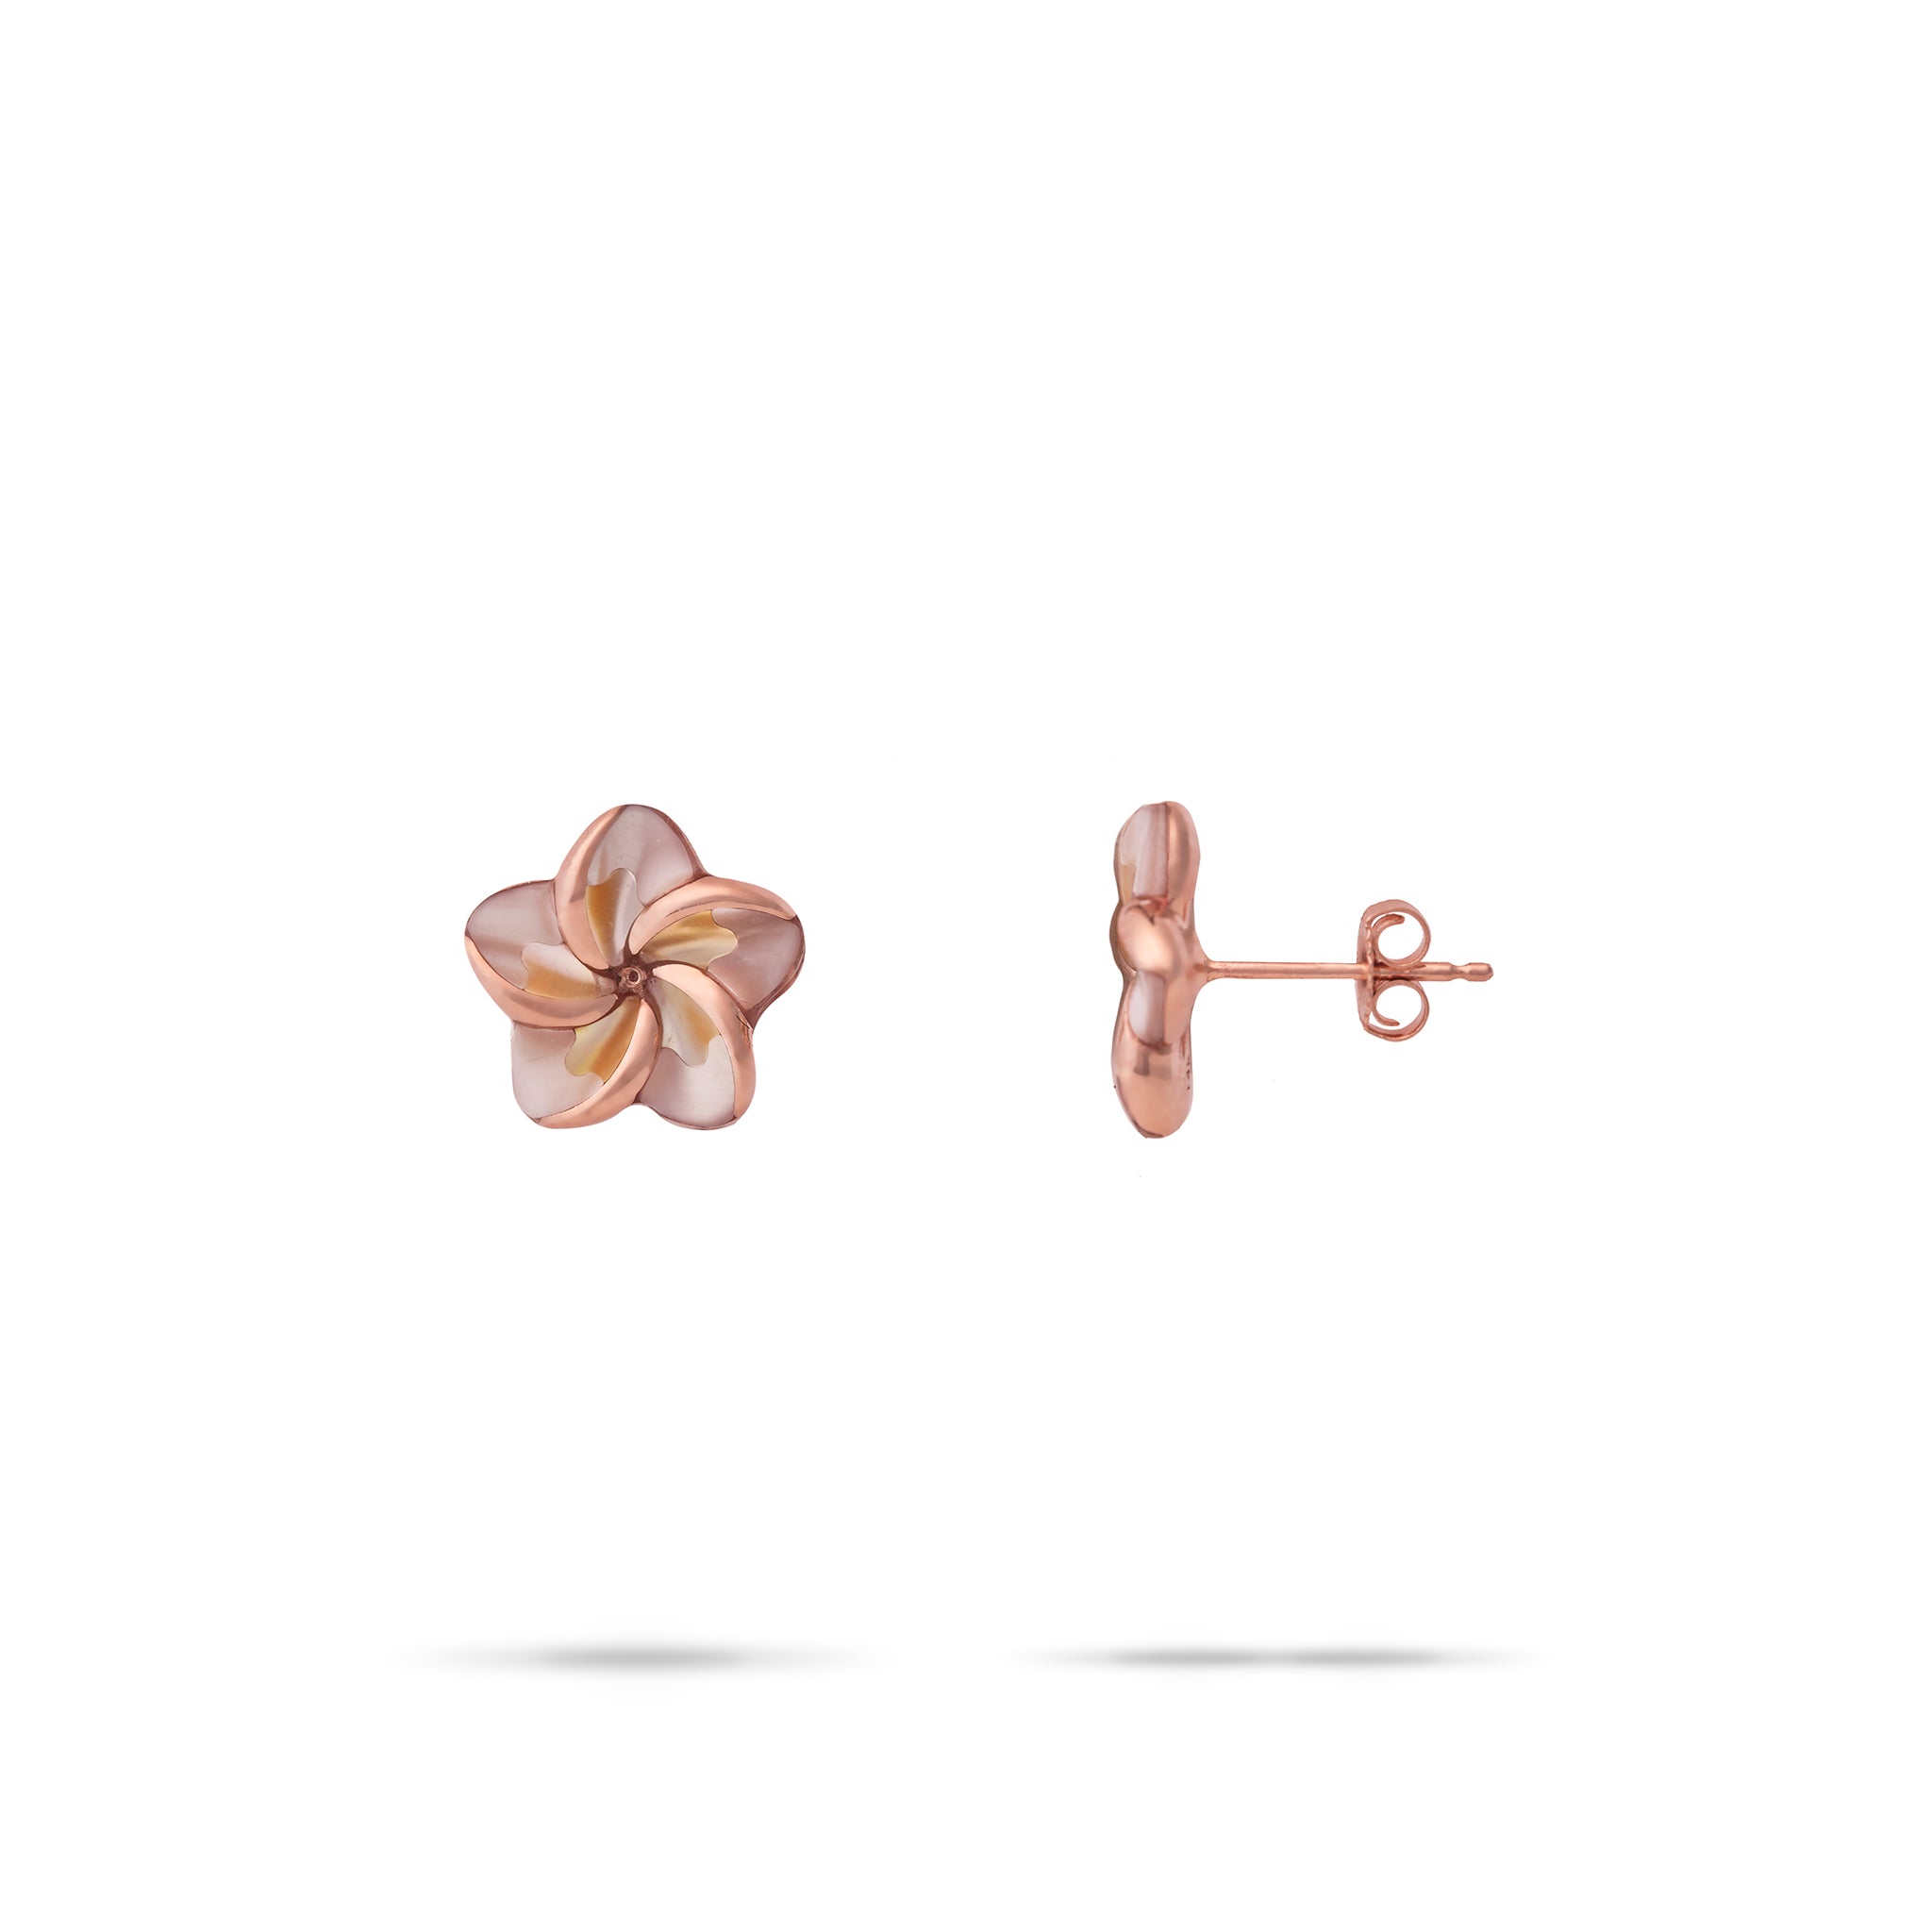 Plumeria Mother of Pearl Earrings in Rose Gold - SKU: 031-00418